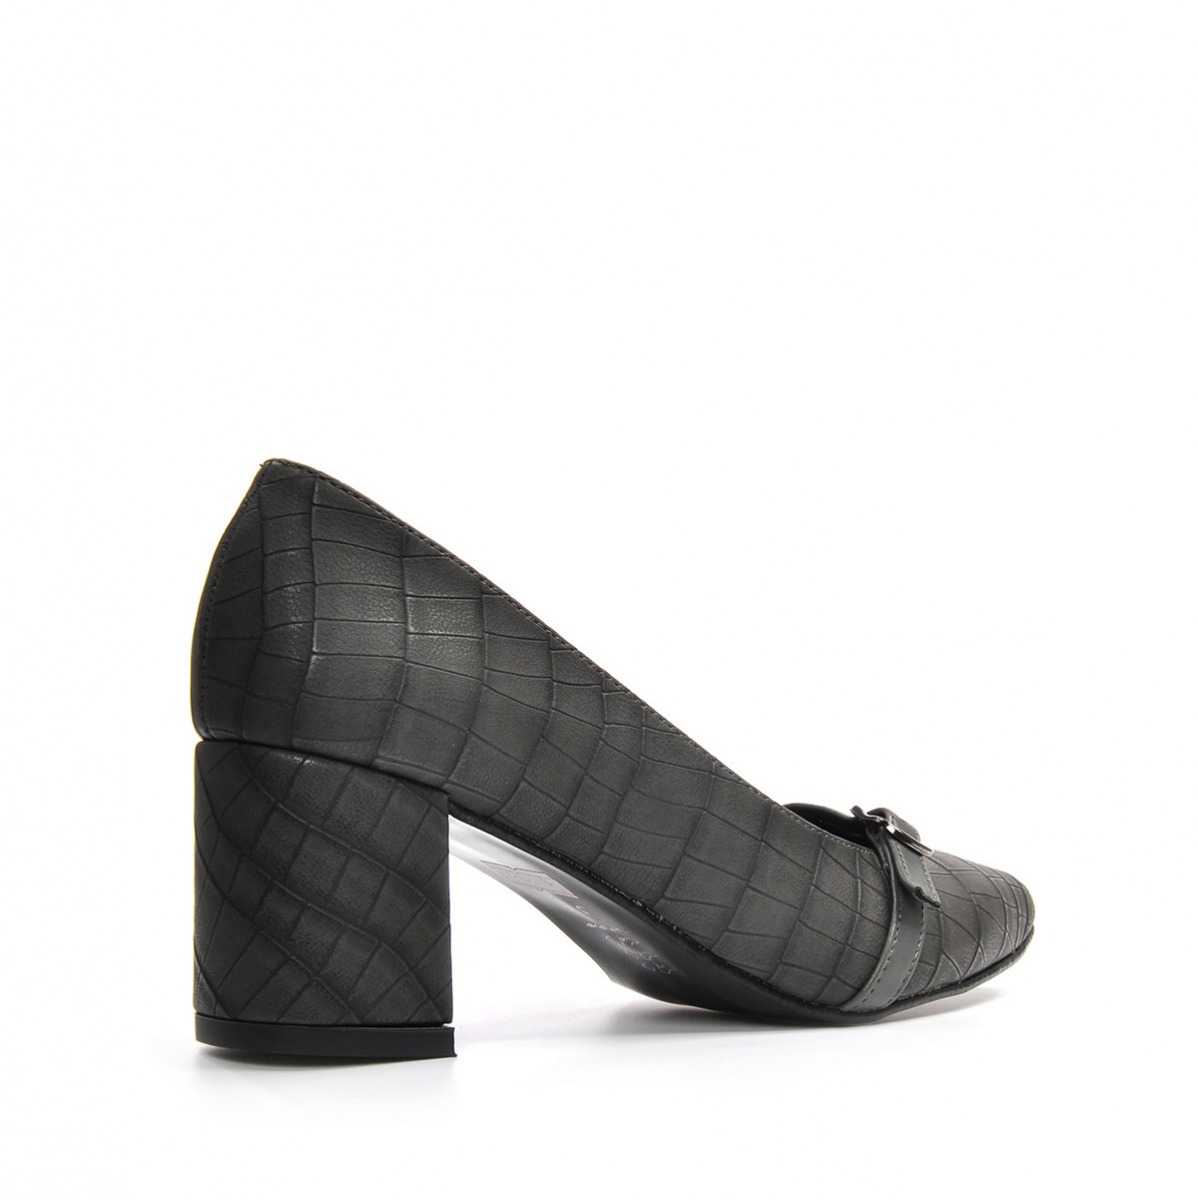 Flo Kadın  Gri-Kroko Klasik Topuklu Ayakkabı VZN19-110K. 4